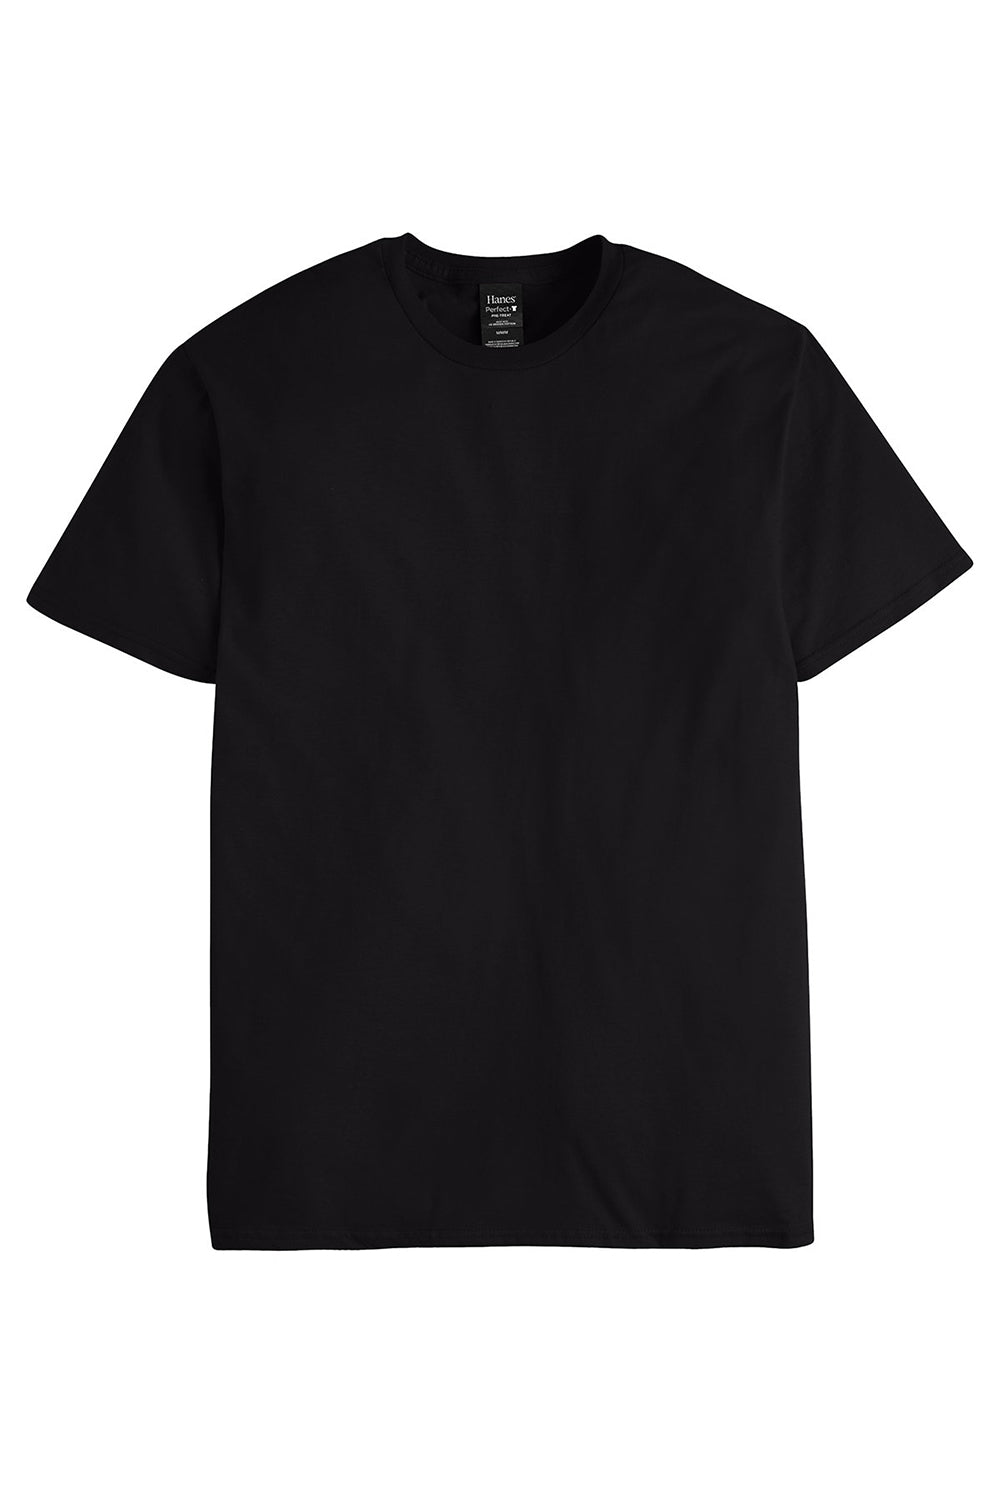 Hanes 498PT Mens Perfect-T PreTreat Short Sleeve Crewneck T-Shirt Black Flat Front